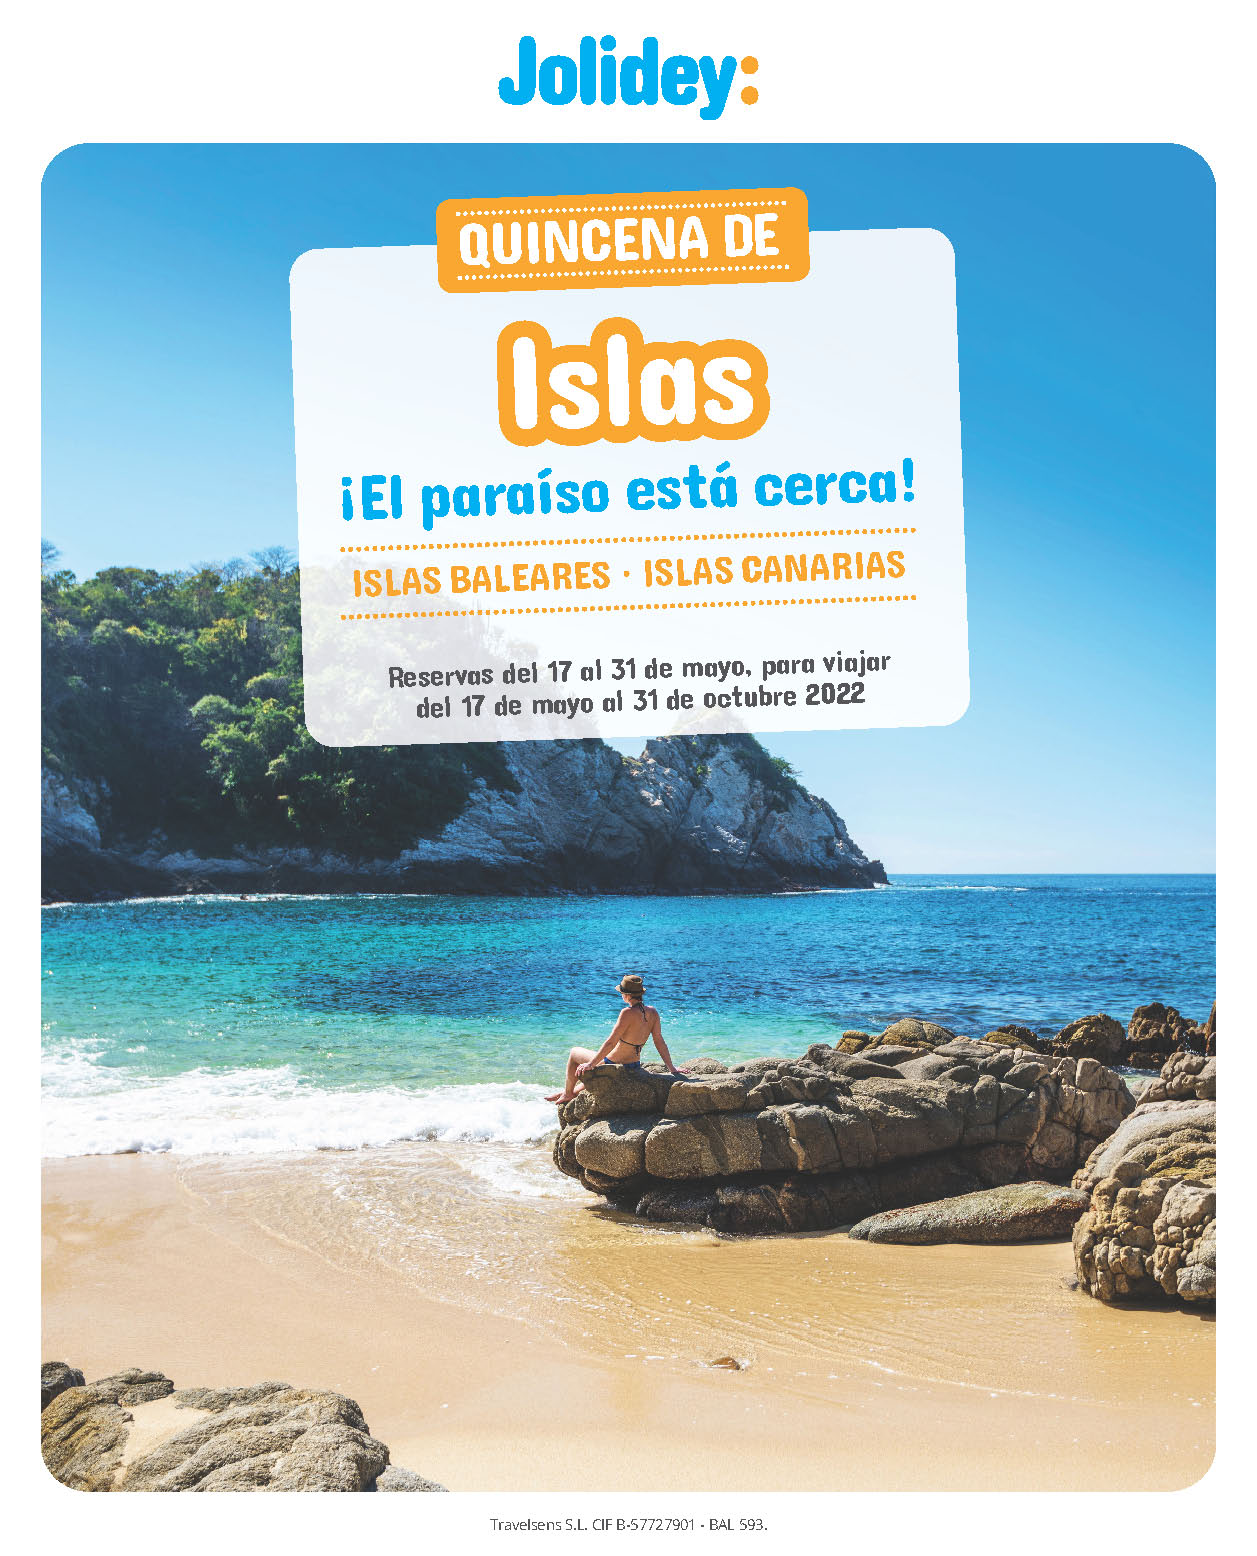 Oferta Jolidey Mayo 2022 Vacaciones en Baleares y Canarias salidas de Junio a Octubre de 2022